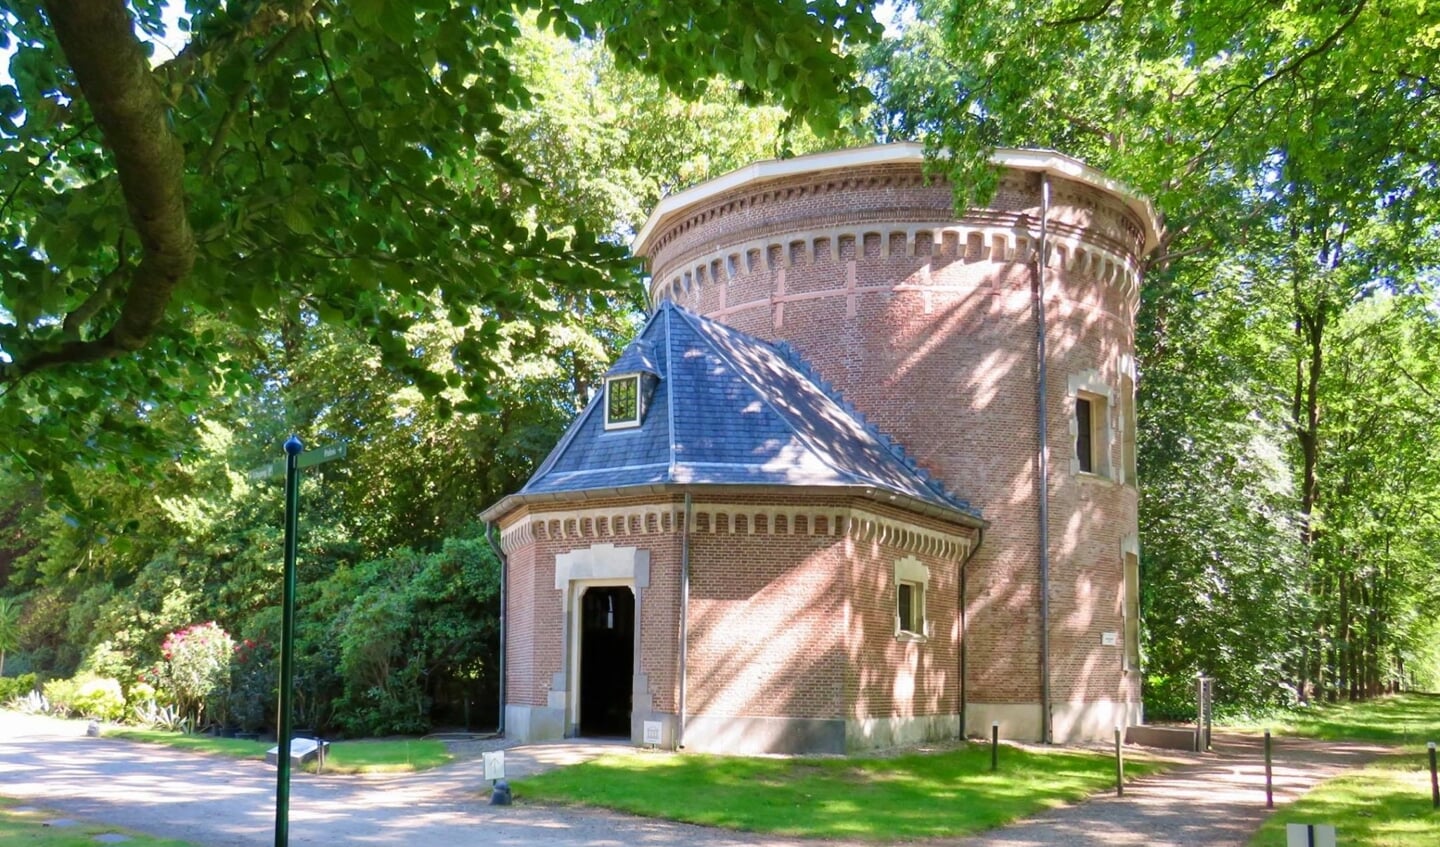 Watertoren uit 1680 (één van de oudsten van Nederland)